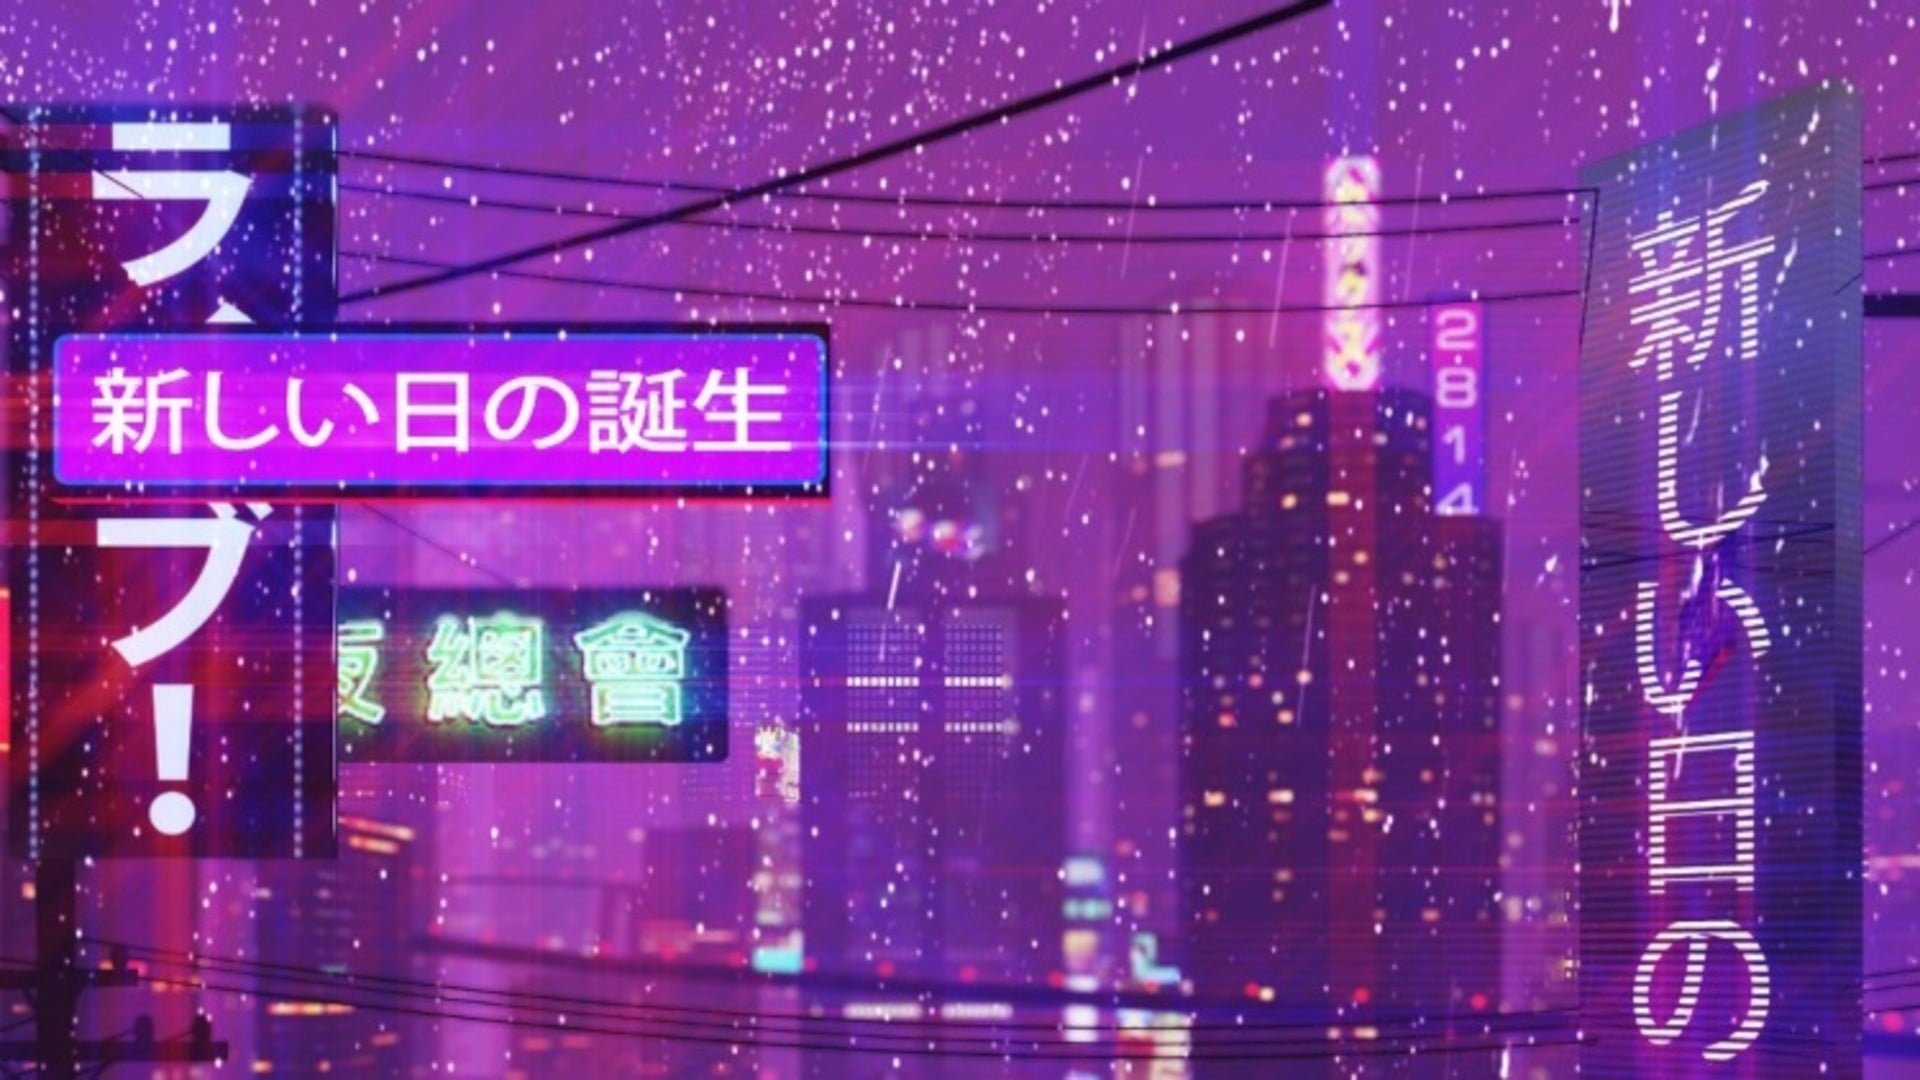 cityscape digital wallpaper, neon text, New Retro Wave, night